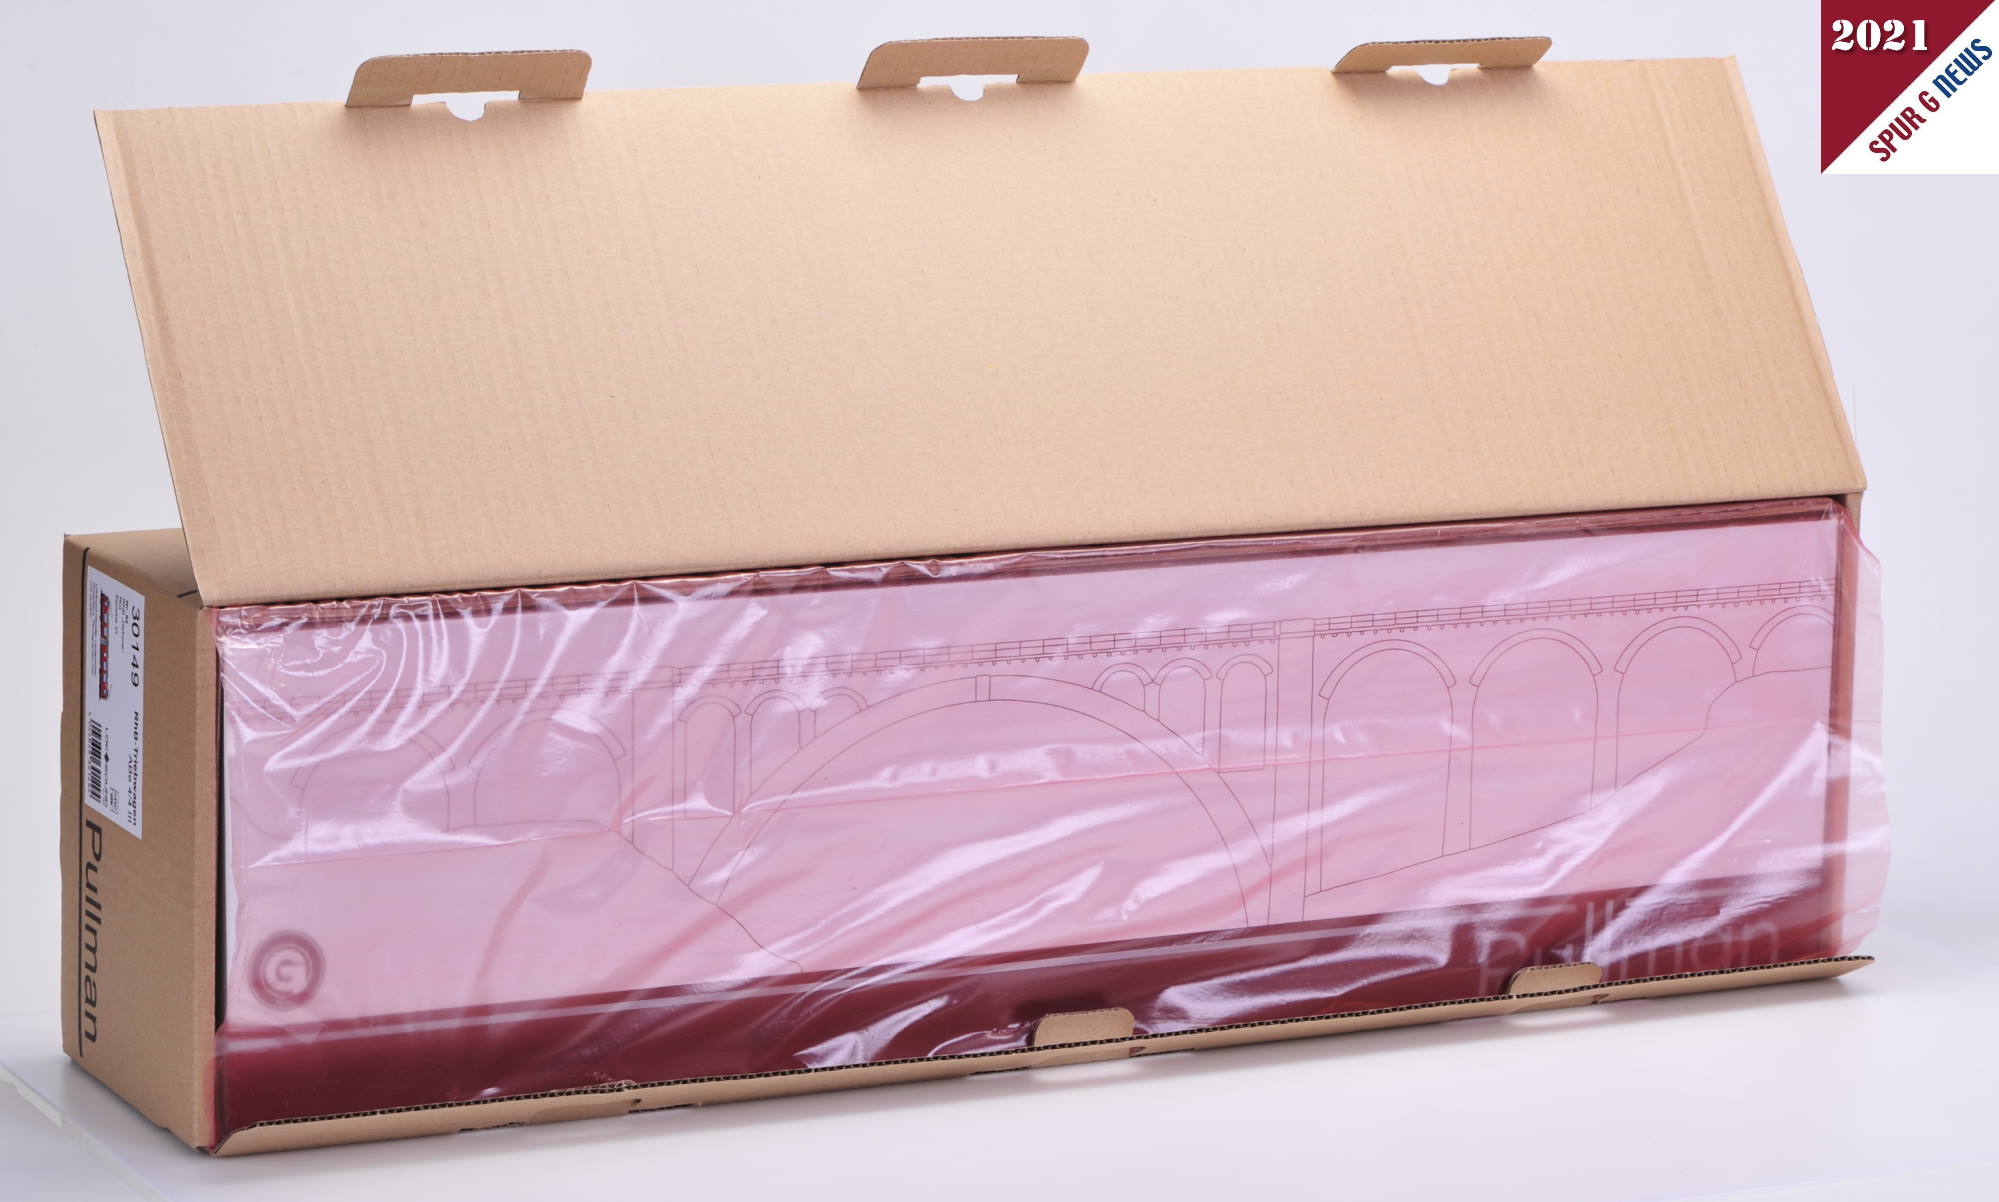 Wird der Umkarton aufgeklappt, kommt wieder ein Verpackungskarton mit rosa Kunststoffhlle zum Vorschein. Nun ist der Pullman Karton in wei mit dem Viadukt schon zu erkennen. 